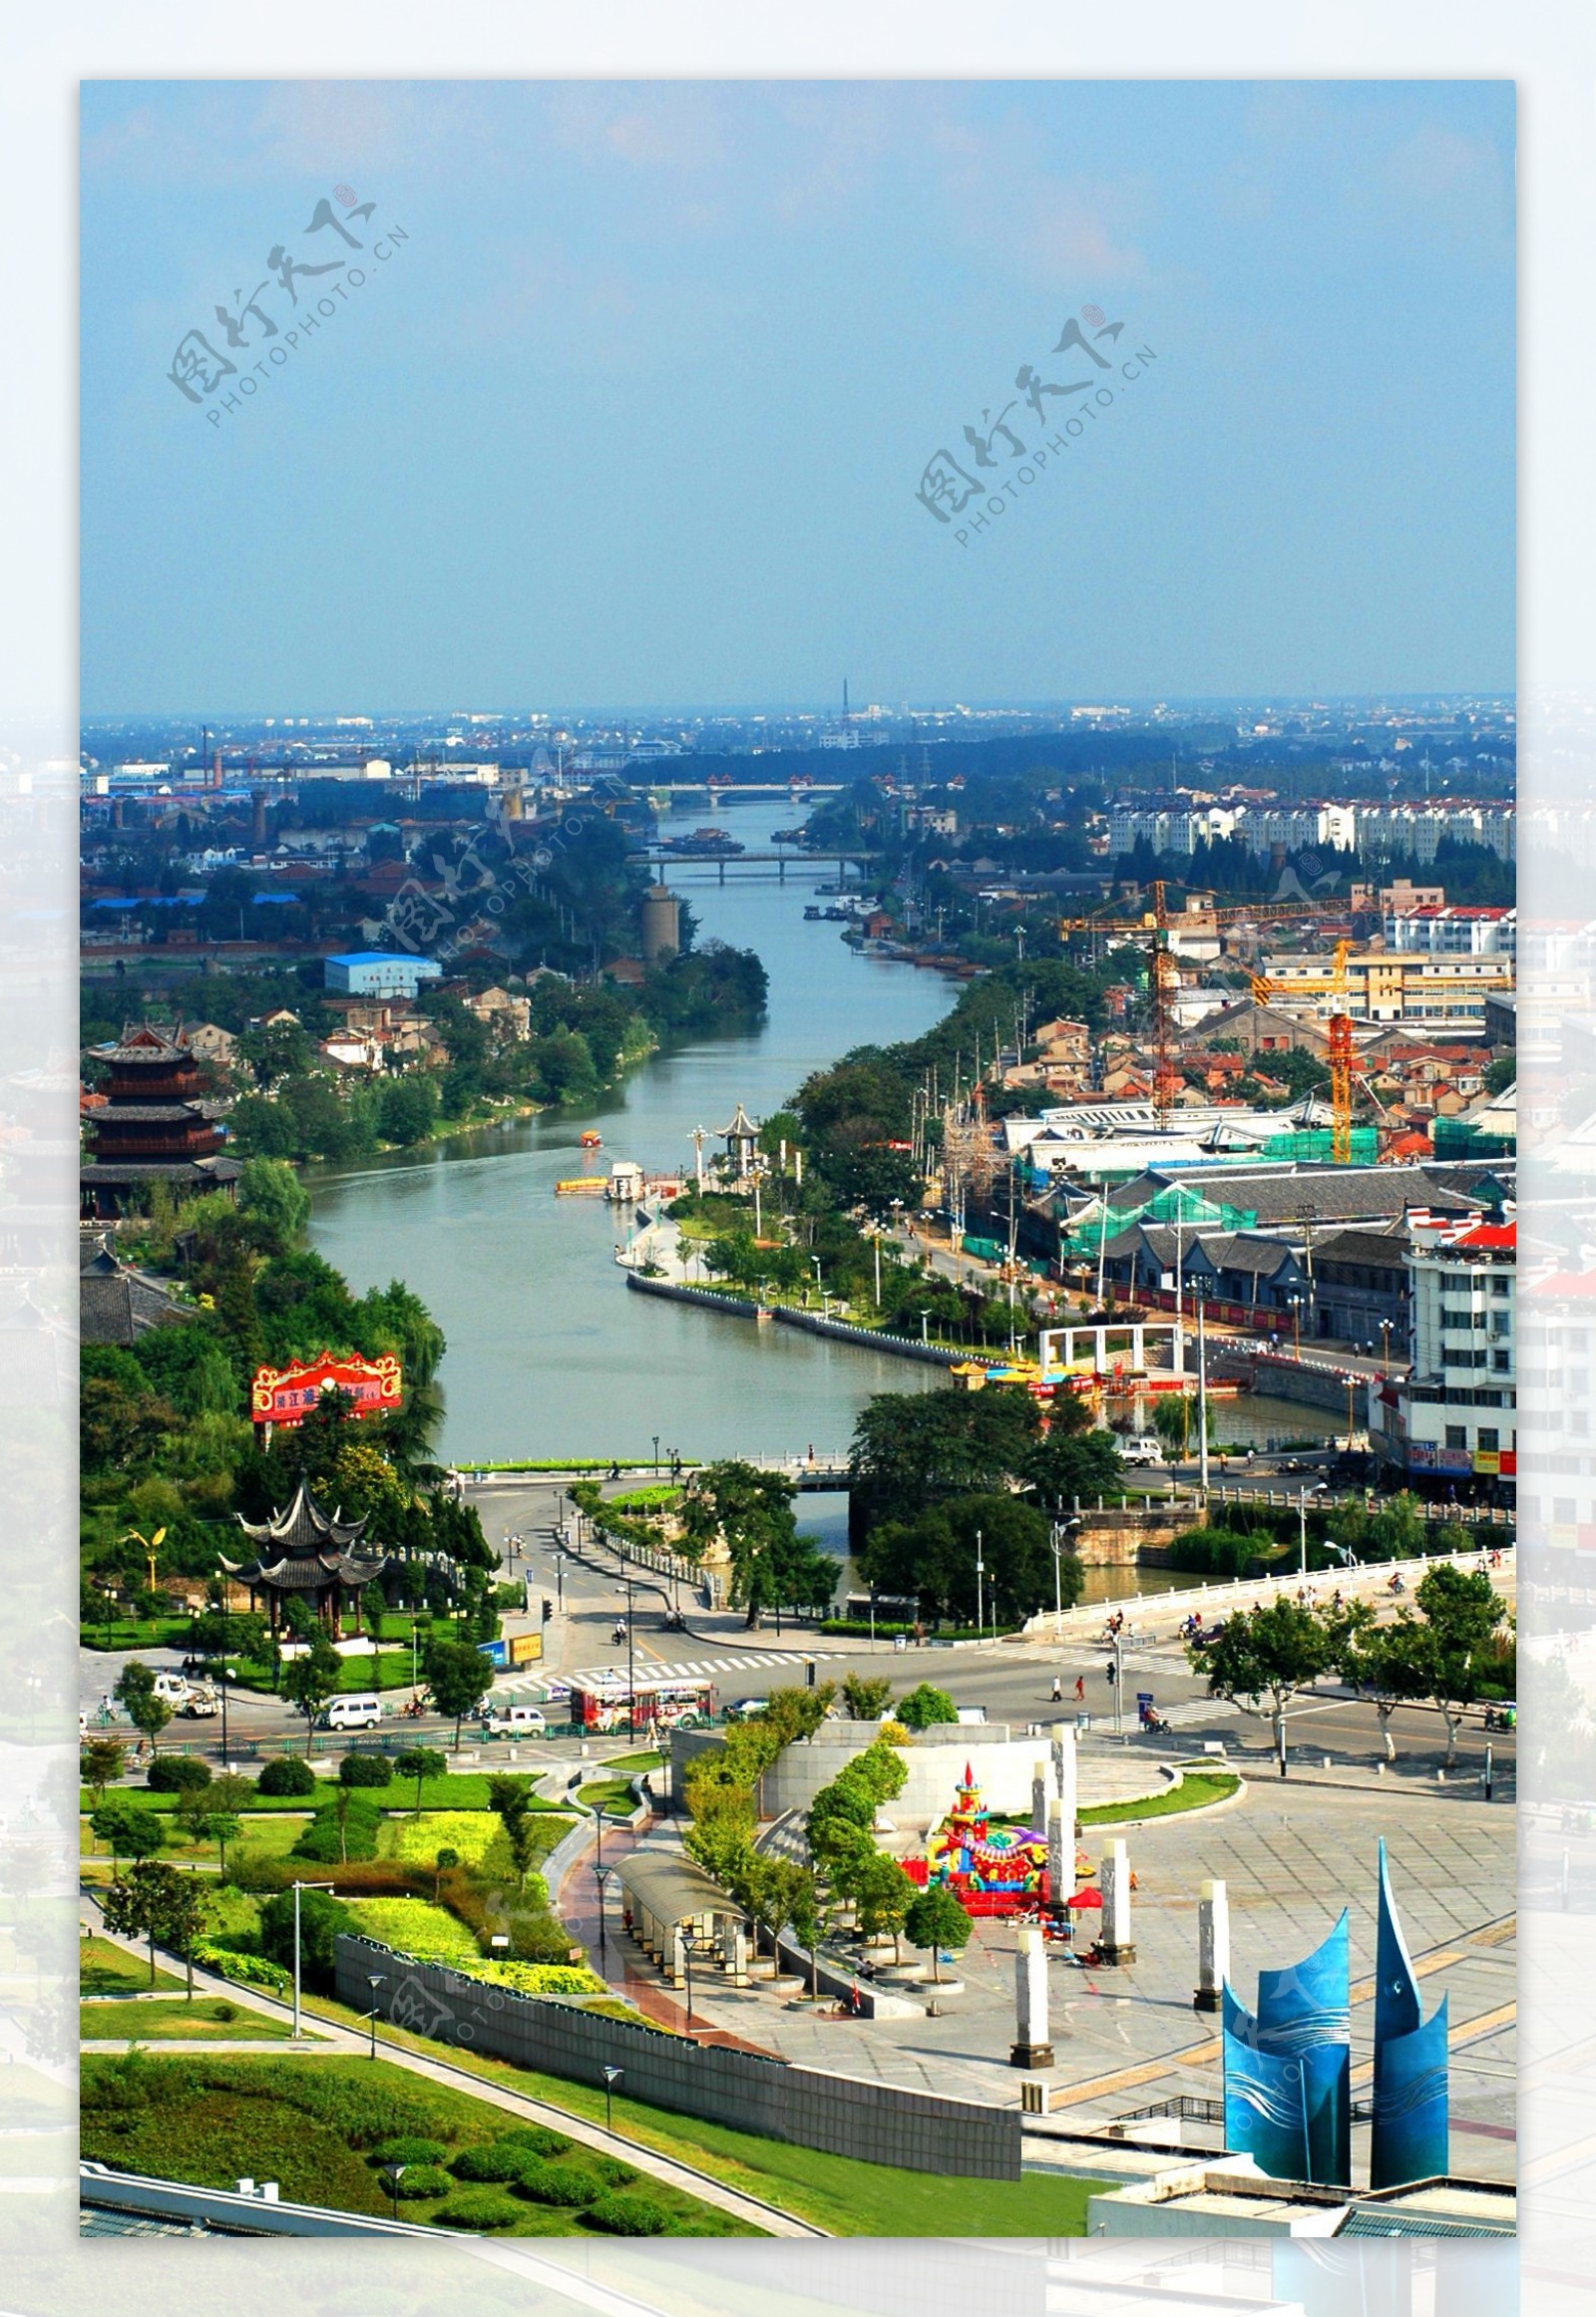 穿越淮安市区的大运河